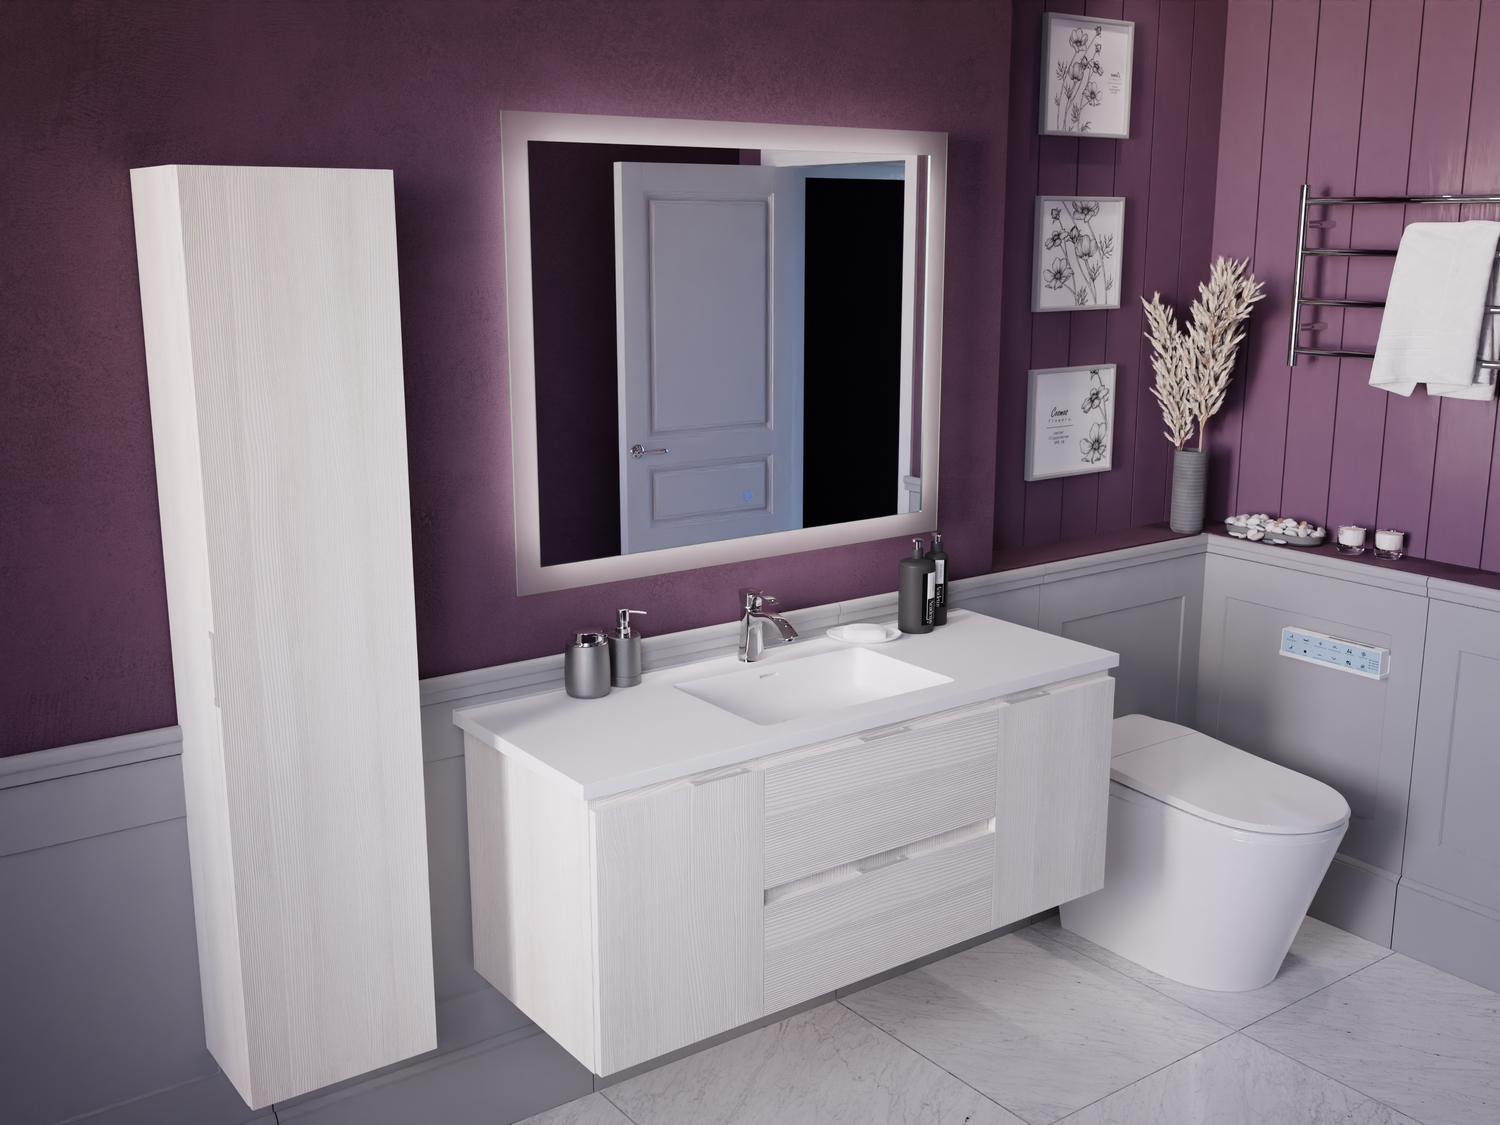 used bathroom vanity units Anzzi BATHROOM - Vanities - Vanity Sets White